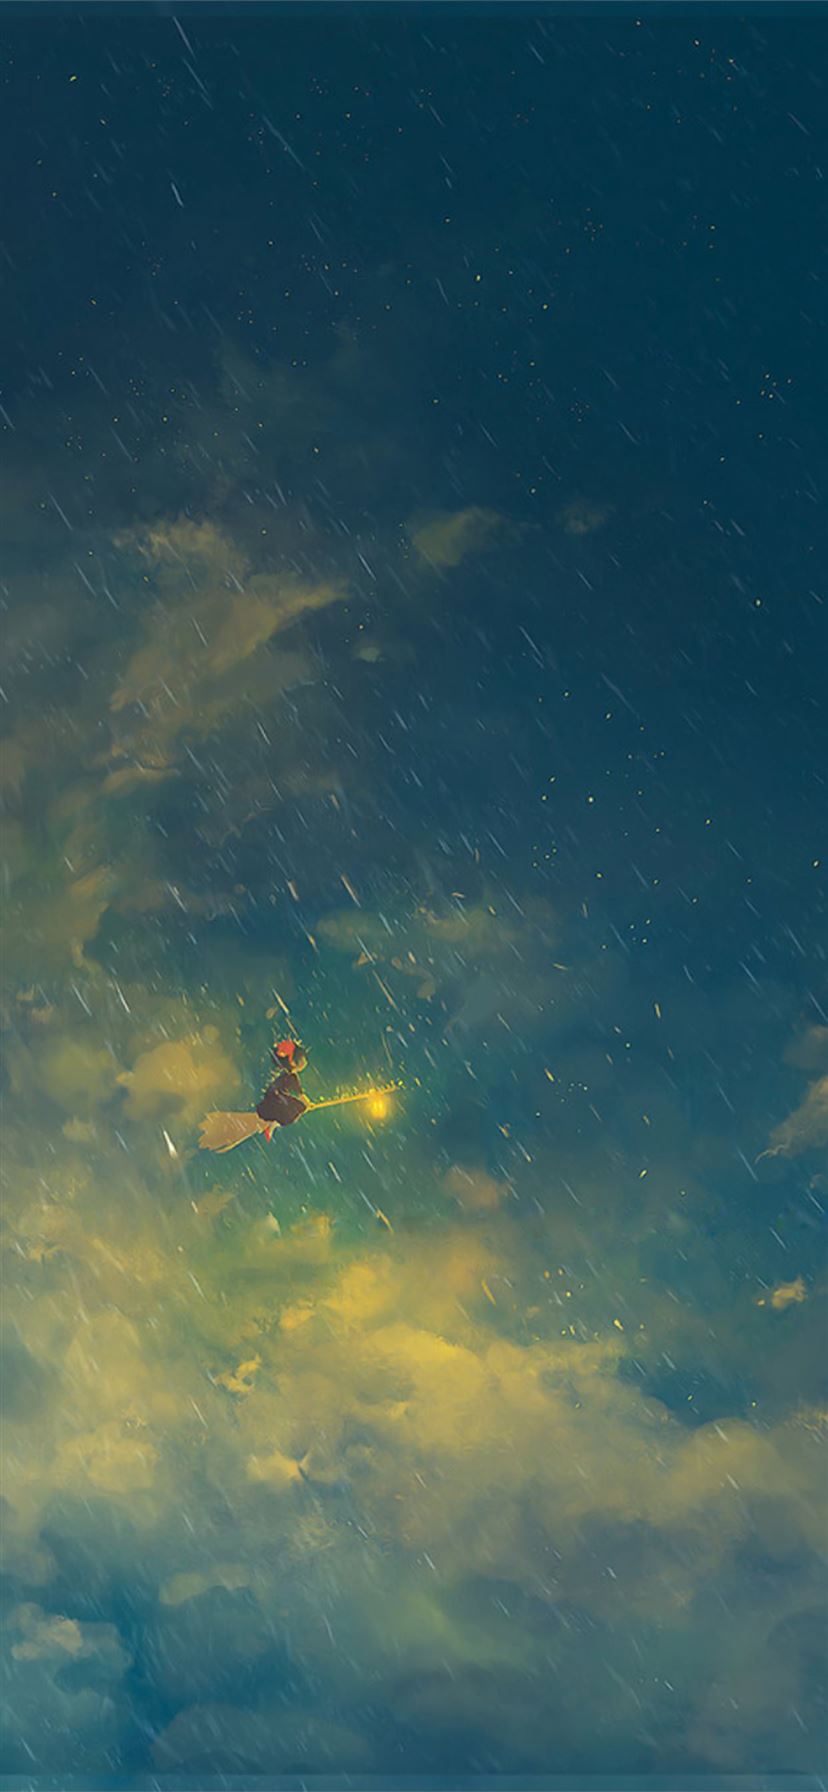 Studio Ghibli Aesthetic Desktop Wallpapers  Top Free Studio Ghibli  Aesthetic Desktop Backgrounds  WallpaperAccess